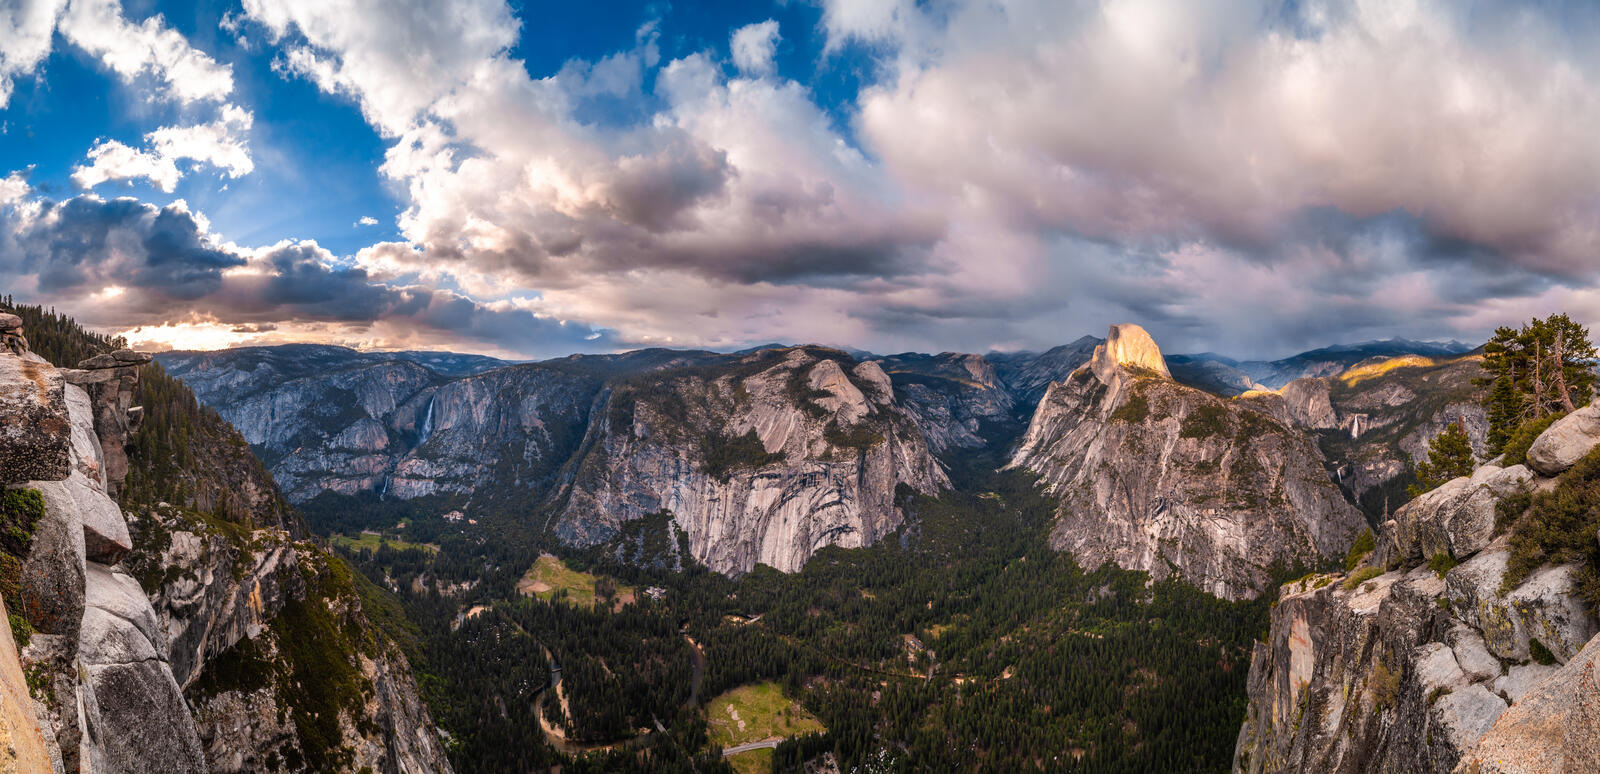 Wallpapers parks crag landscapes California on the desktop